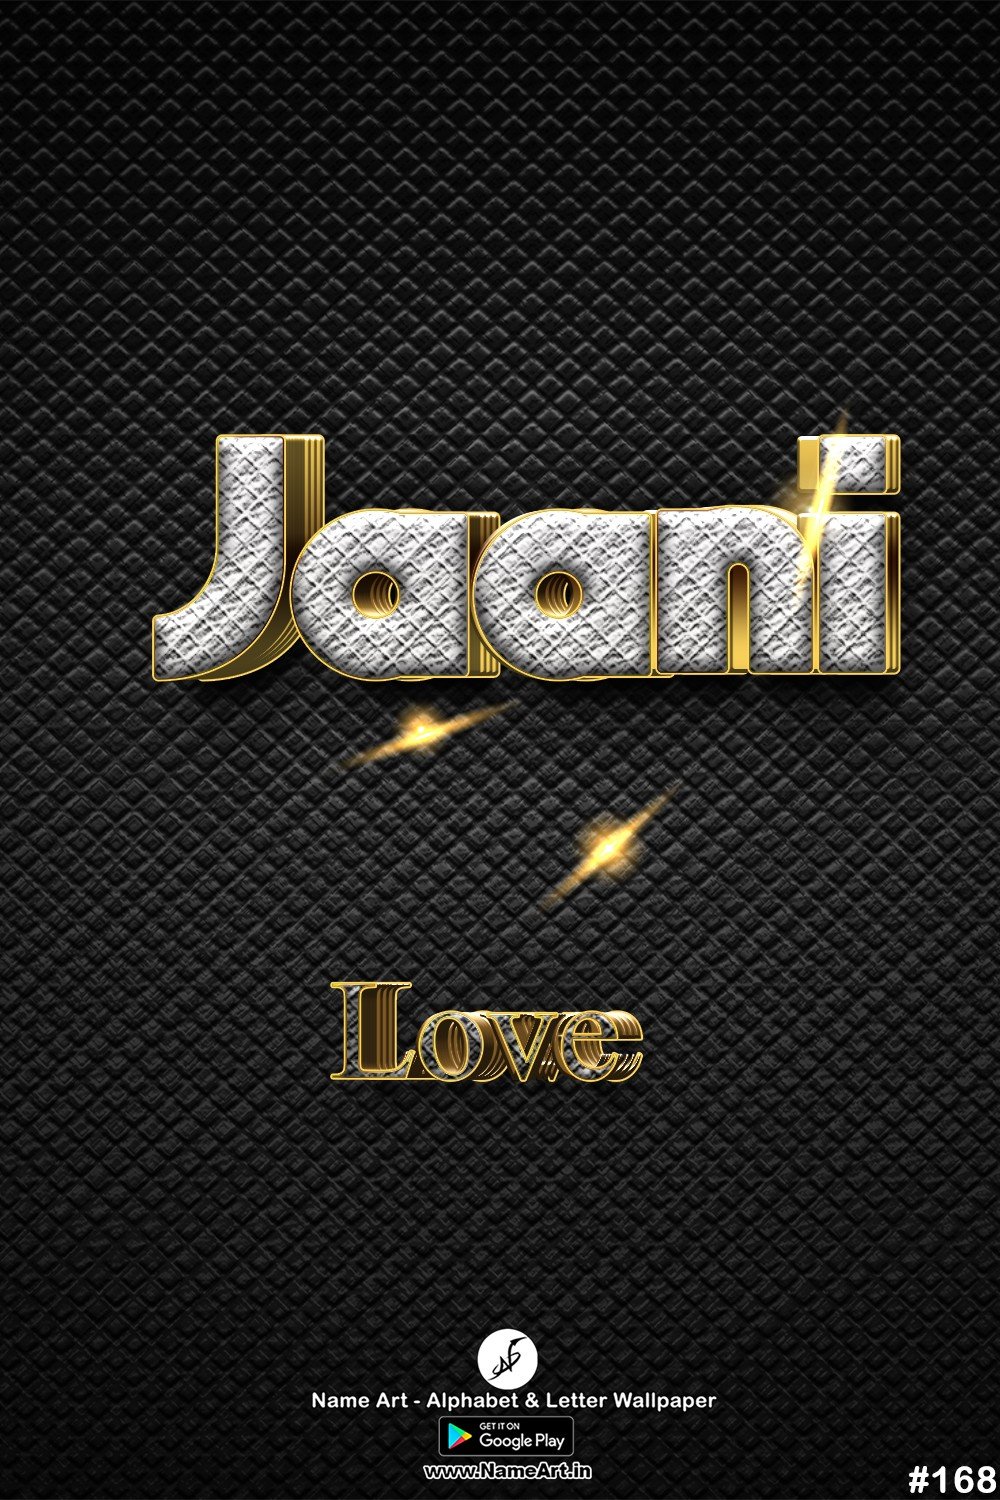 Jaani | Whatsapp Status Jaani | Happy Birthday Jaani !! | New Whatsapp Status Jaani Images |